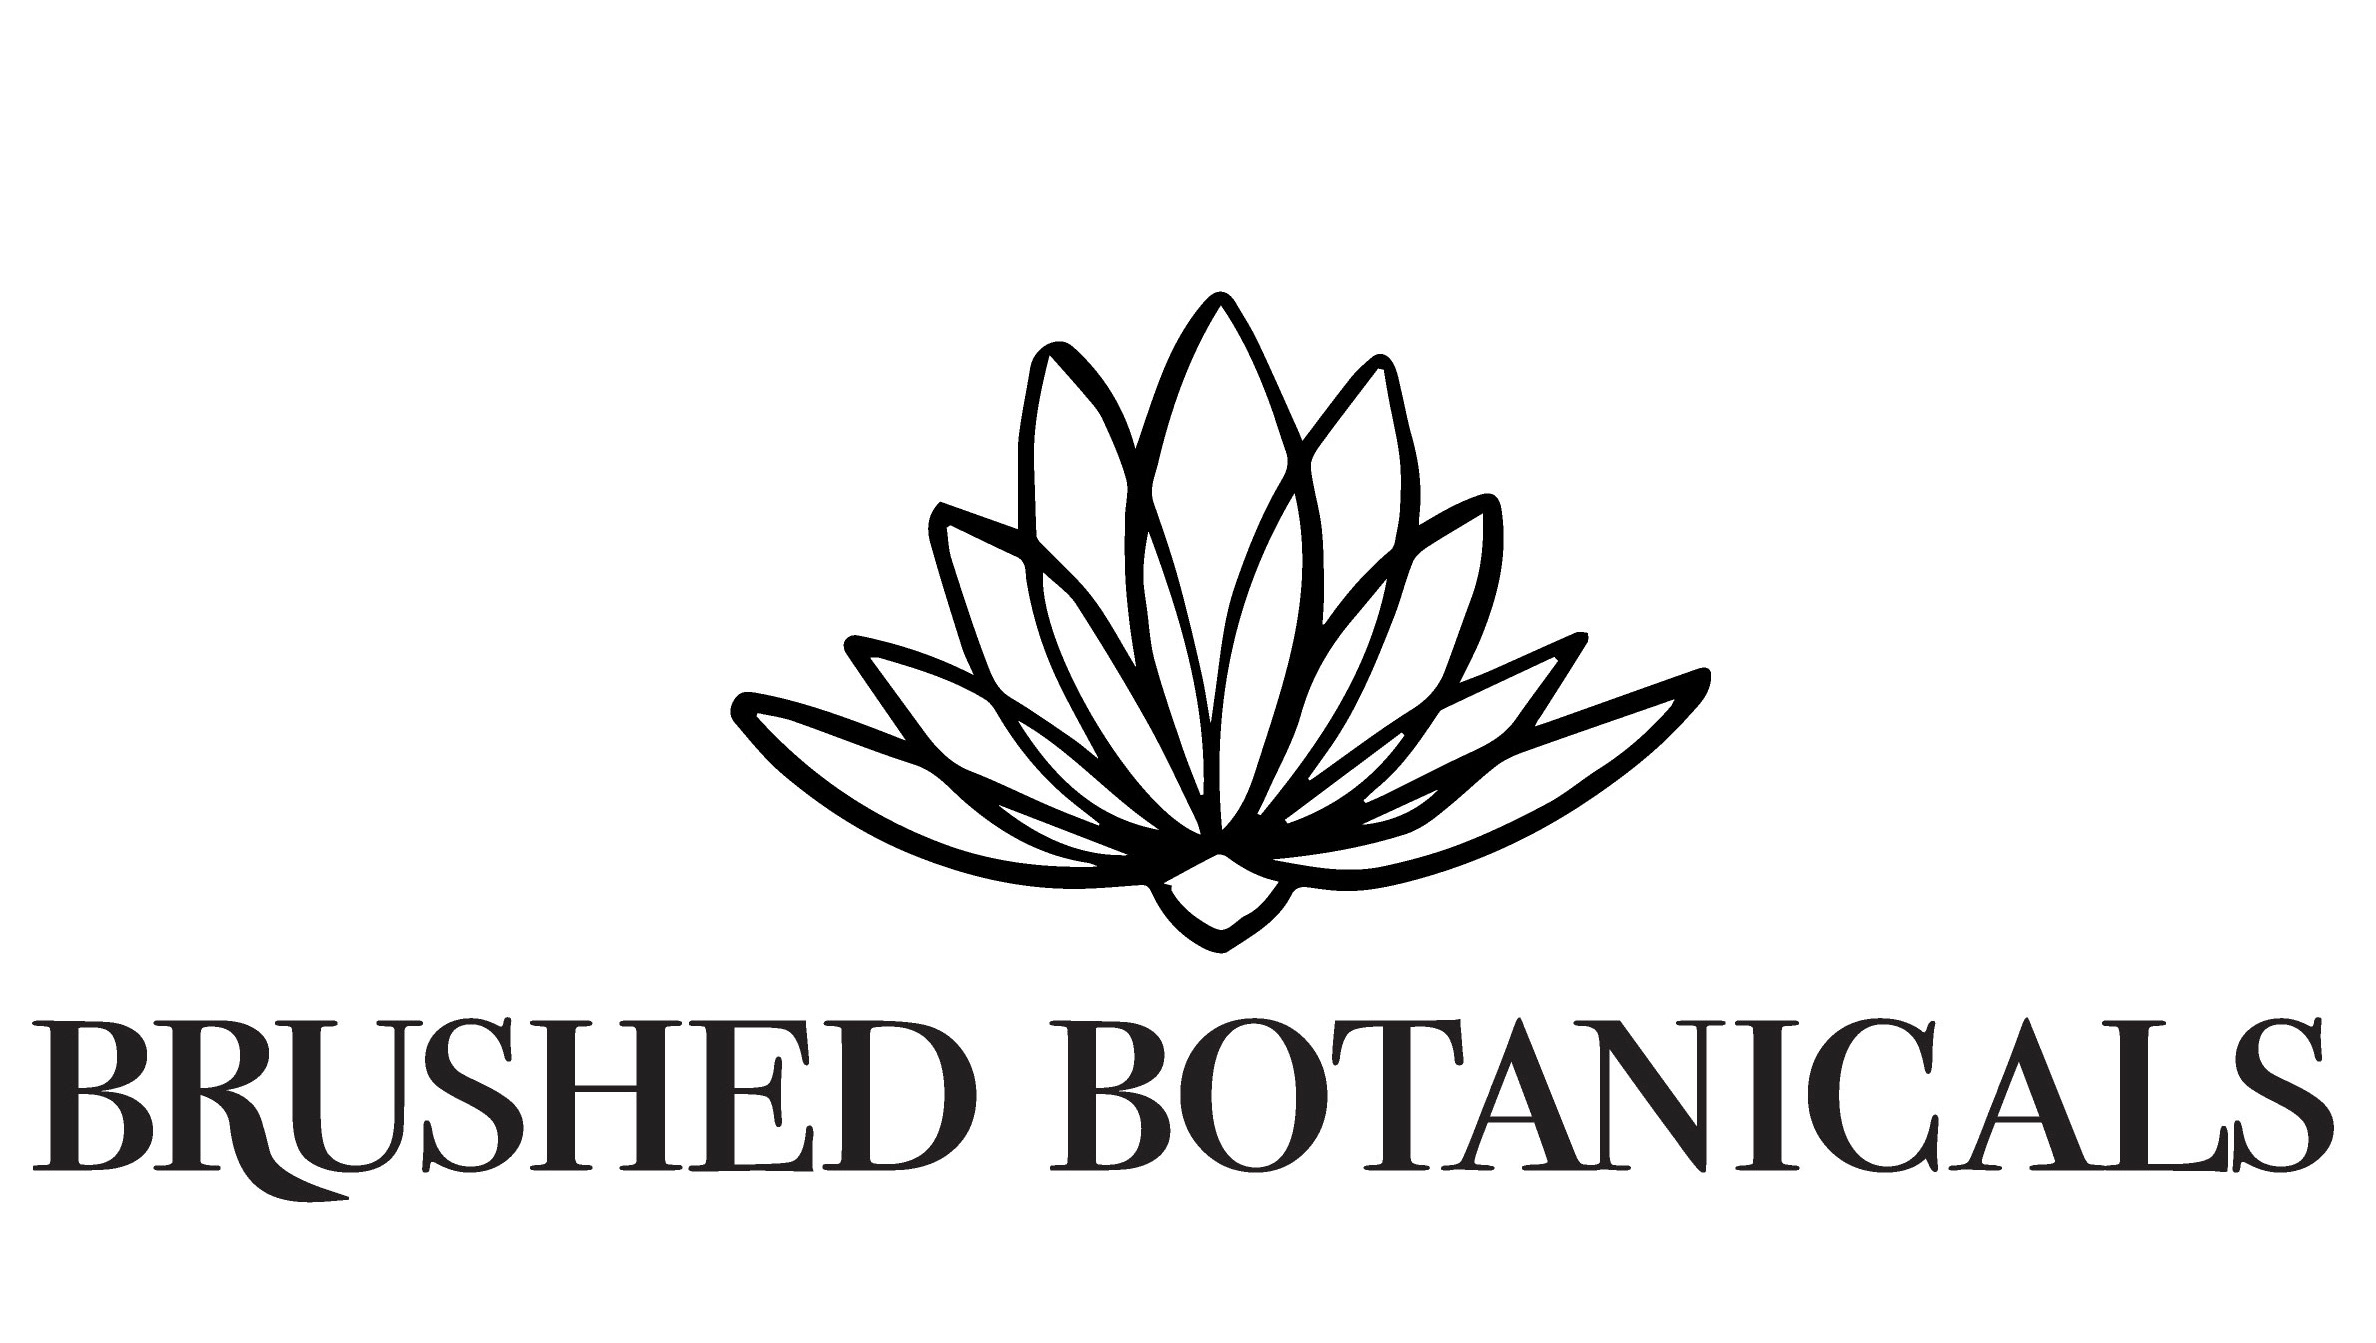 Dustin Cytacki Brushed Botanicals